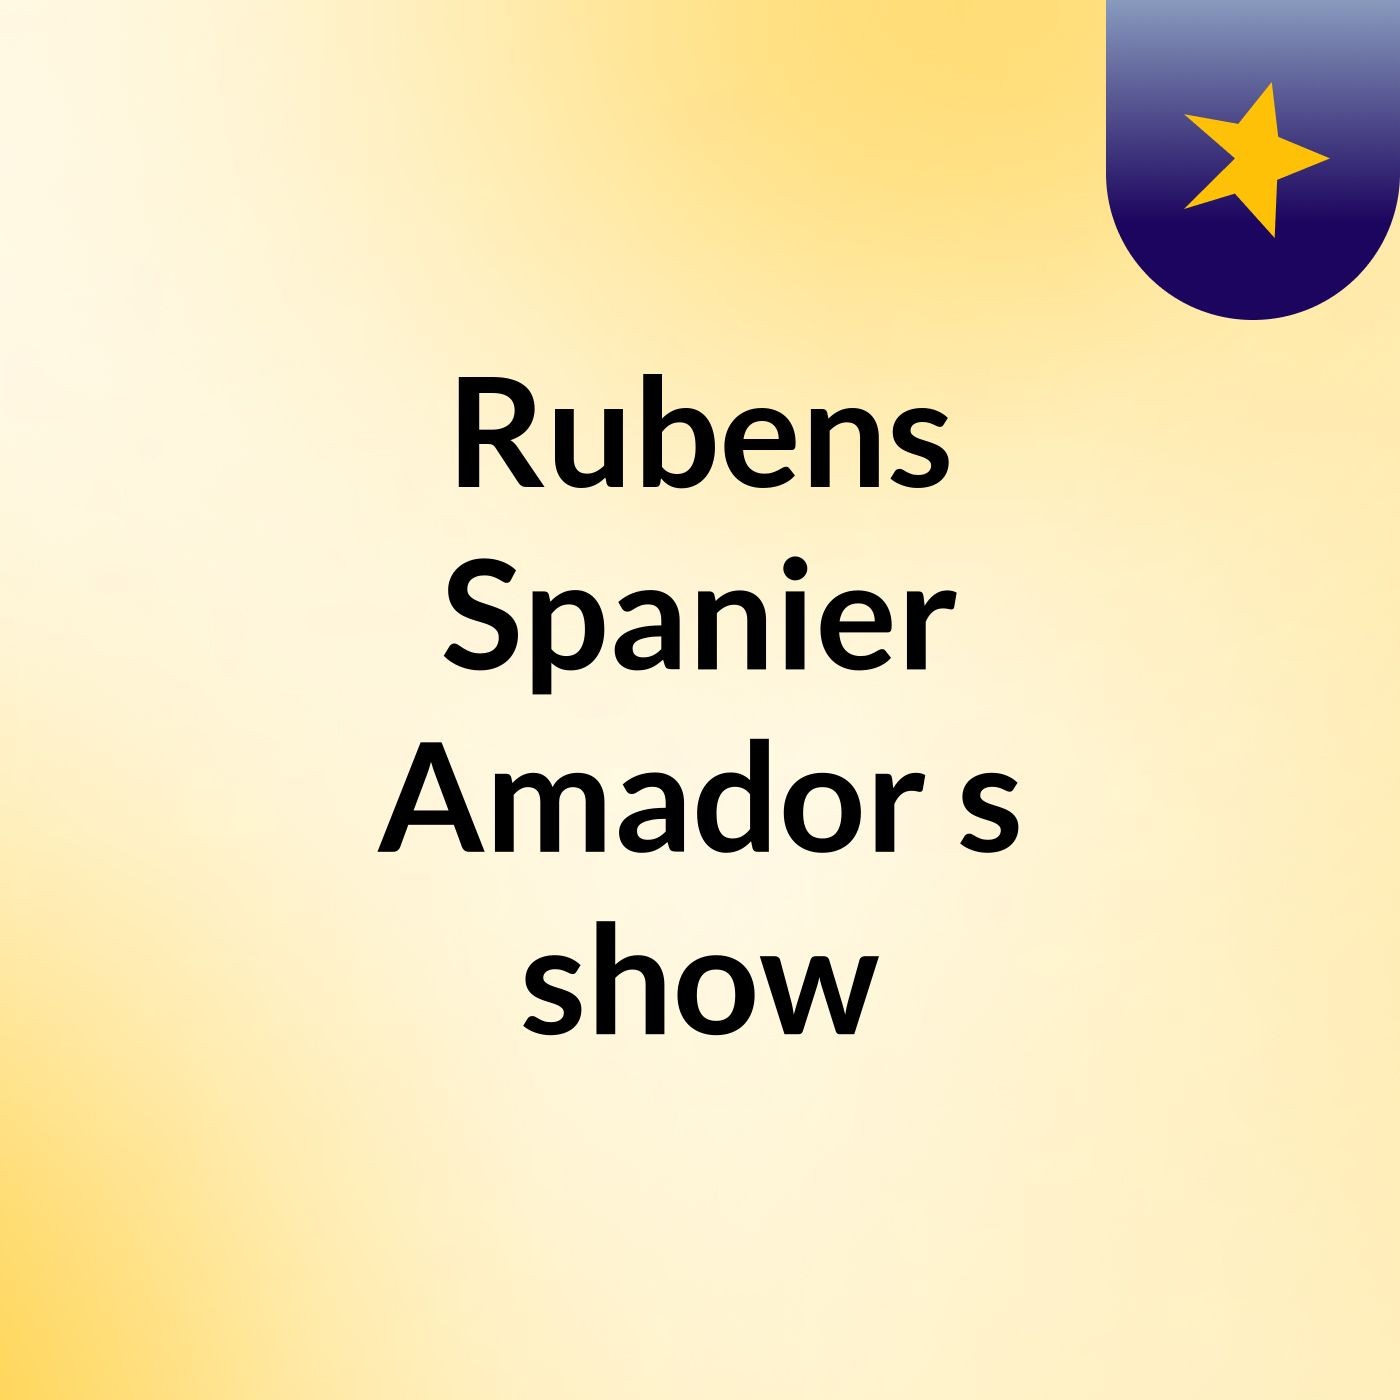 Rubens Spanier Amador's show